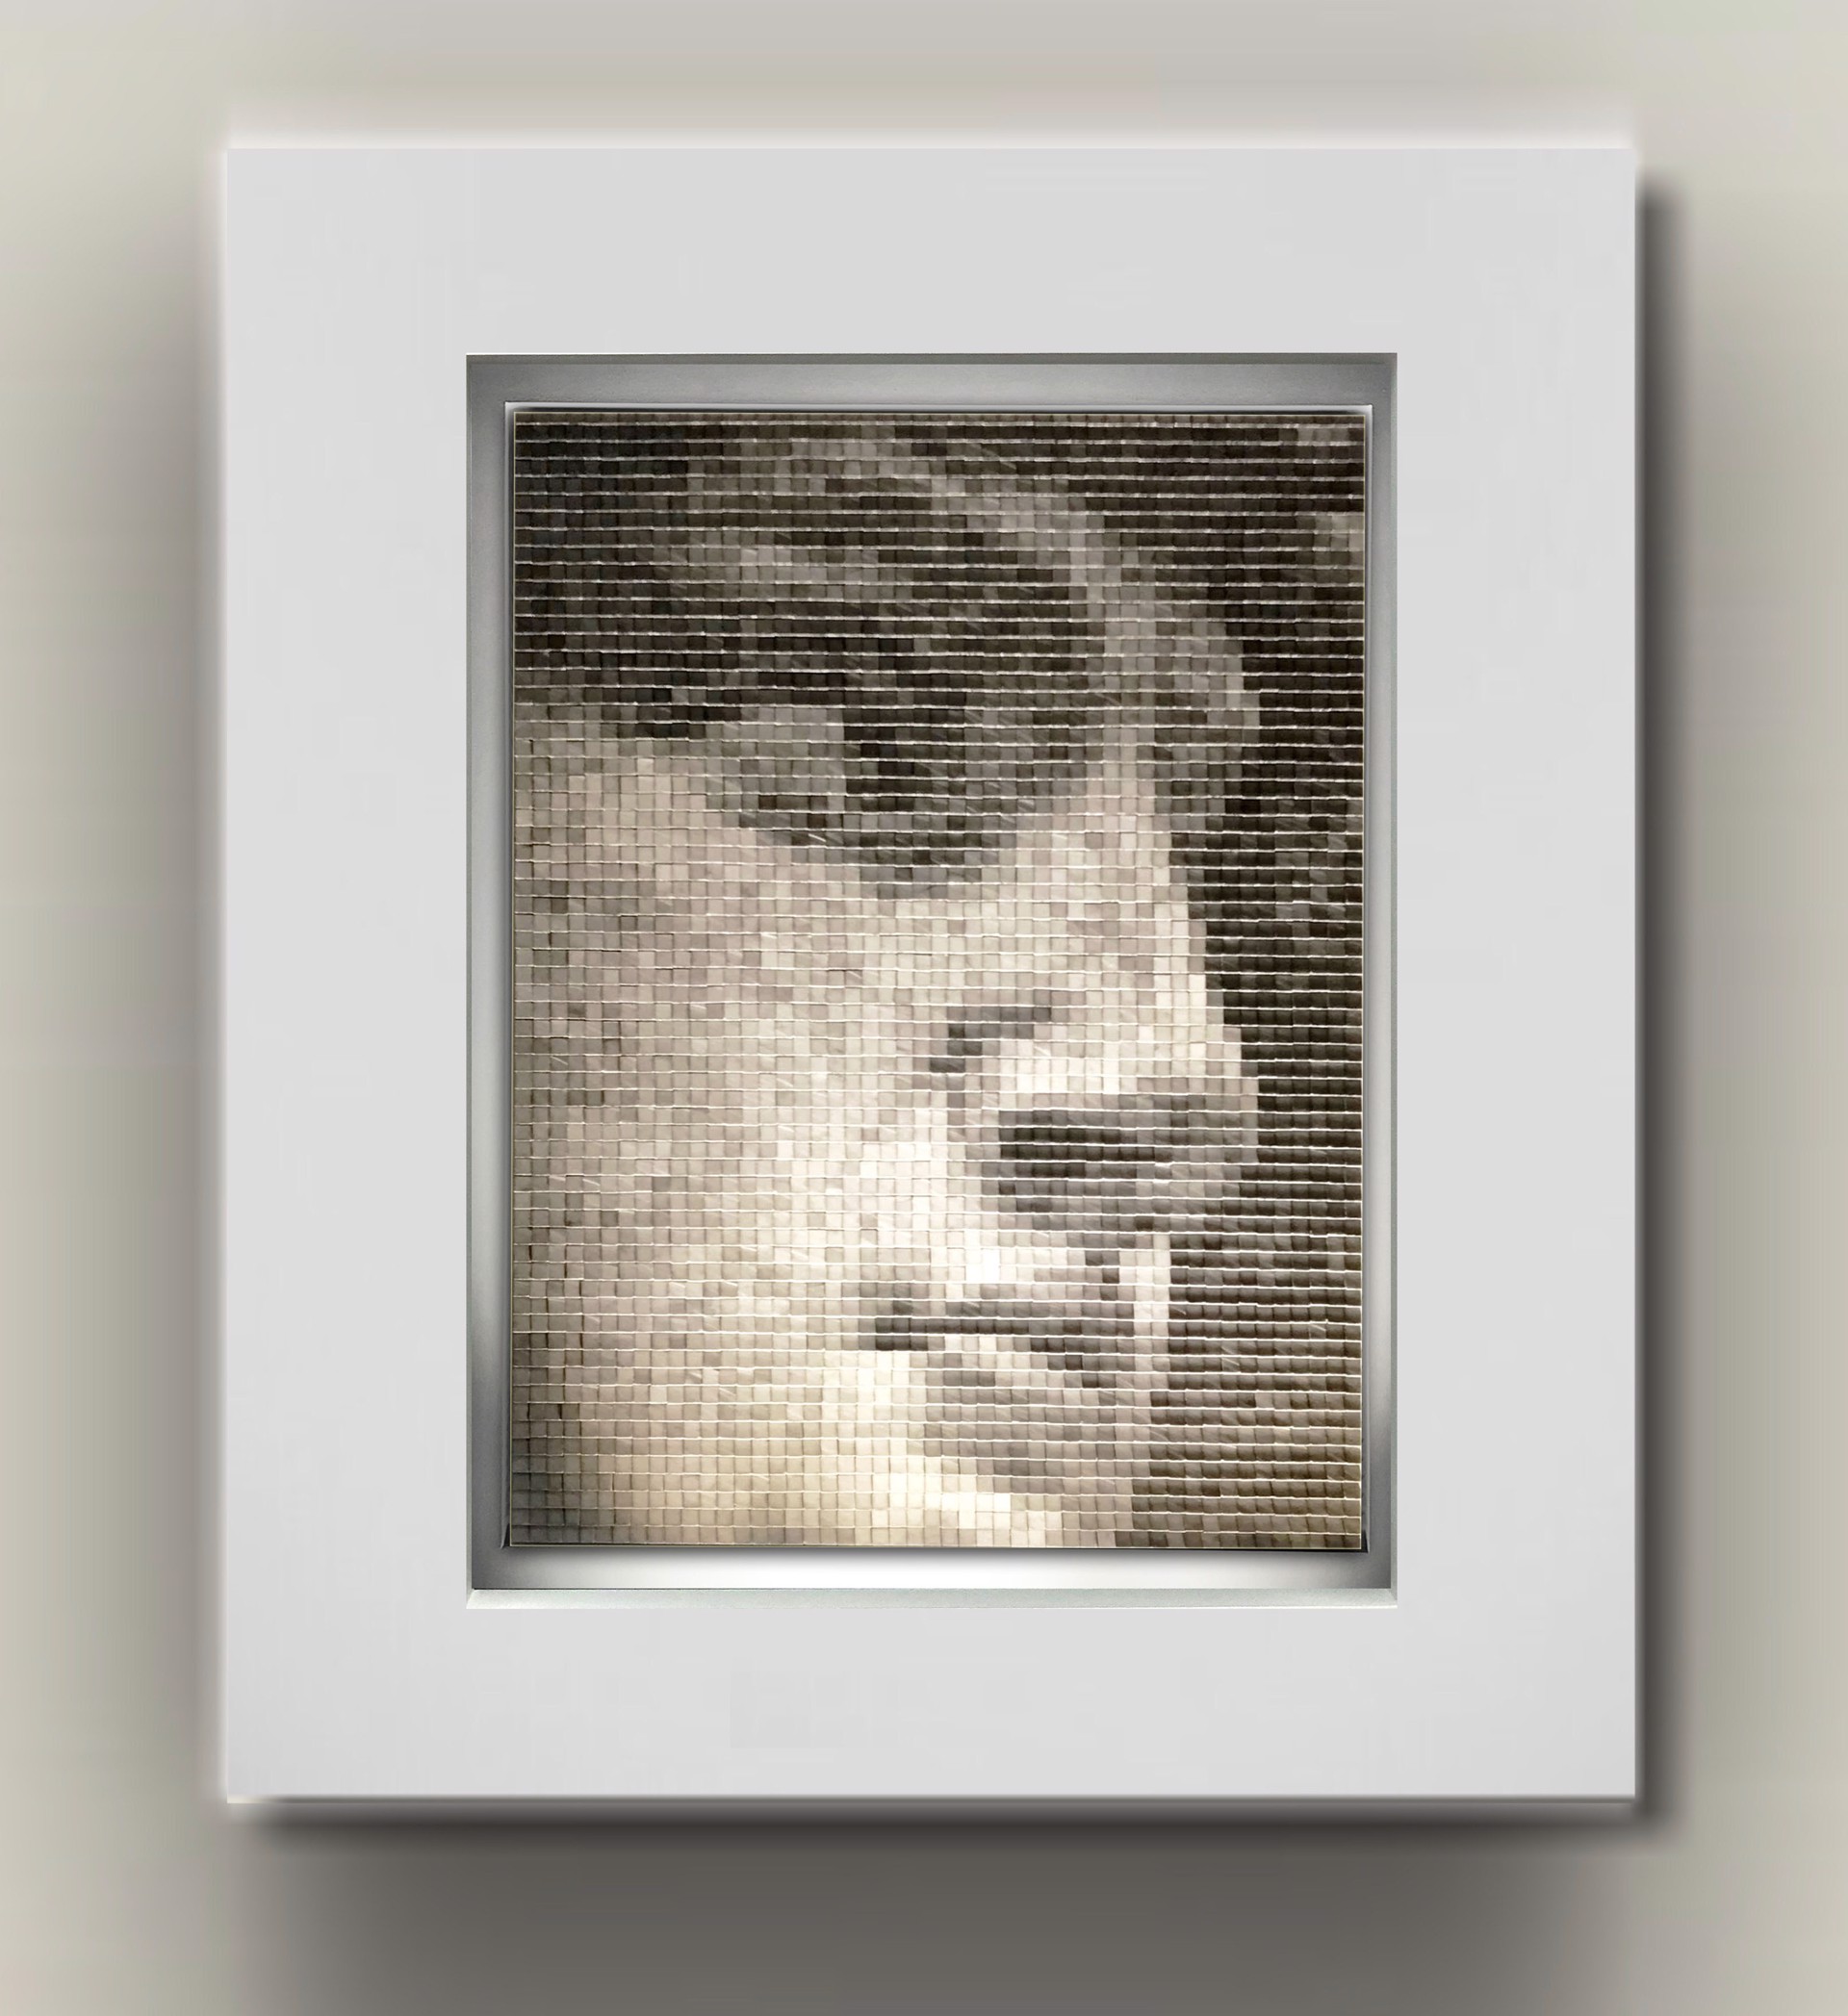 David VI by J.P. Goncalves, Pixel